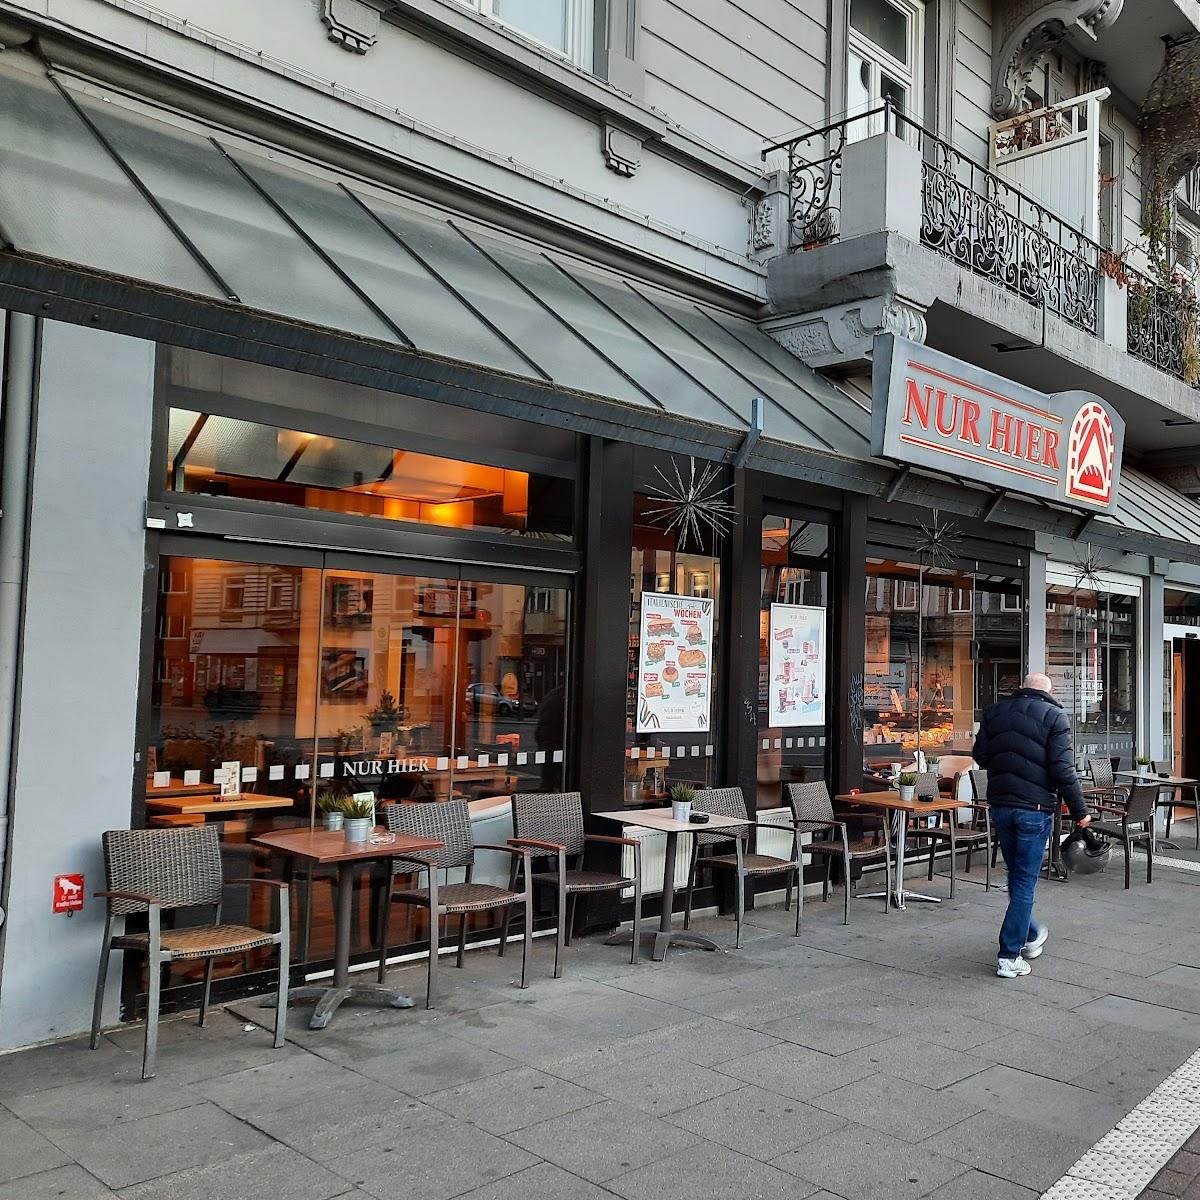 Restaurant "Nur Hier GmbH" in Hamburg